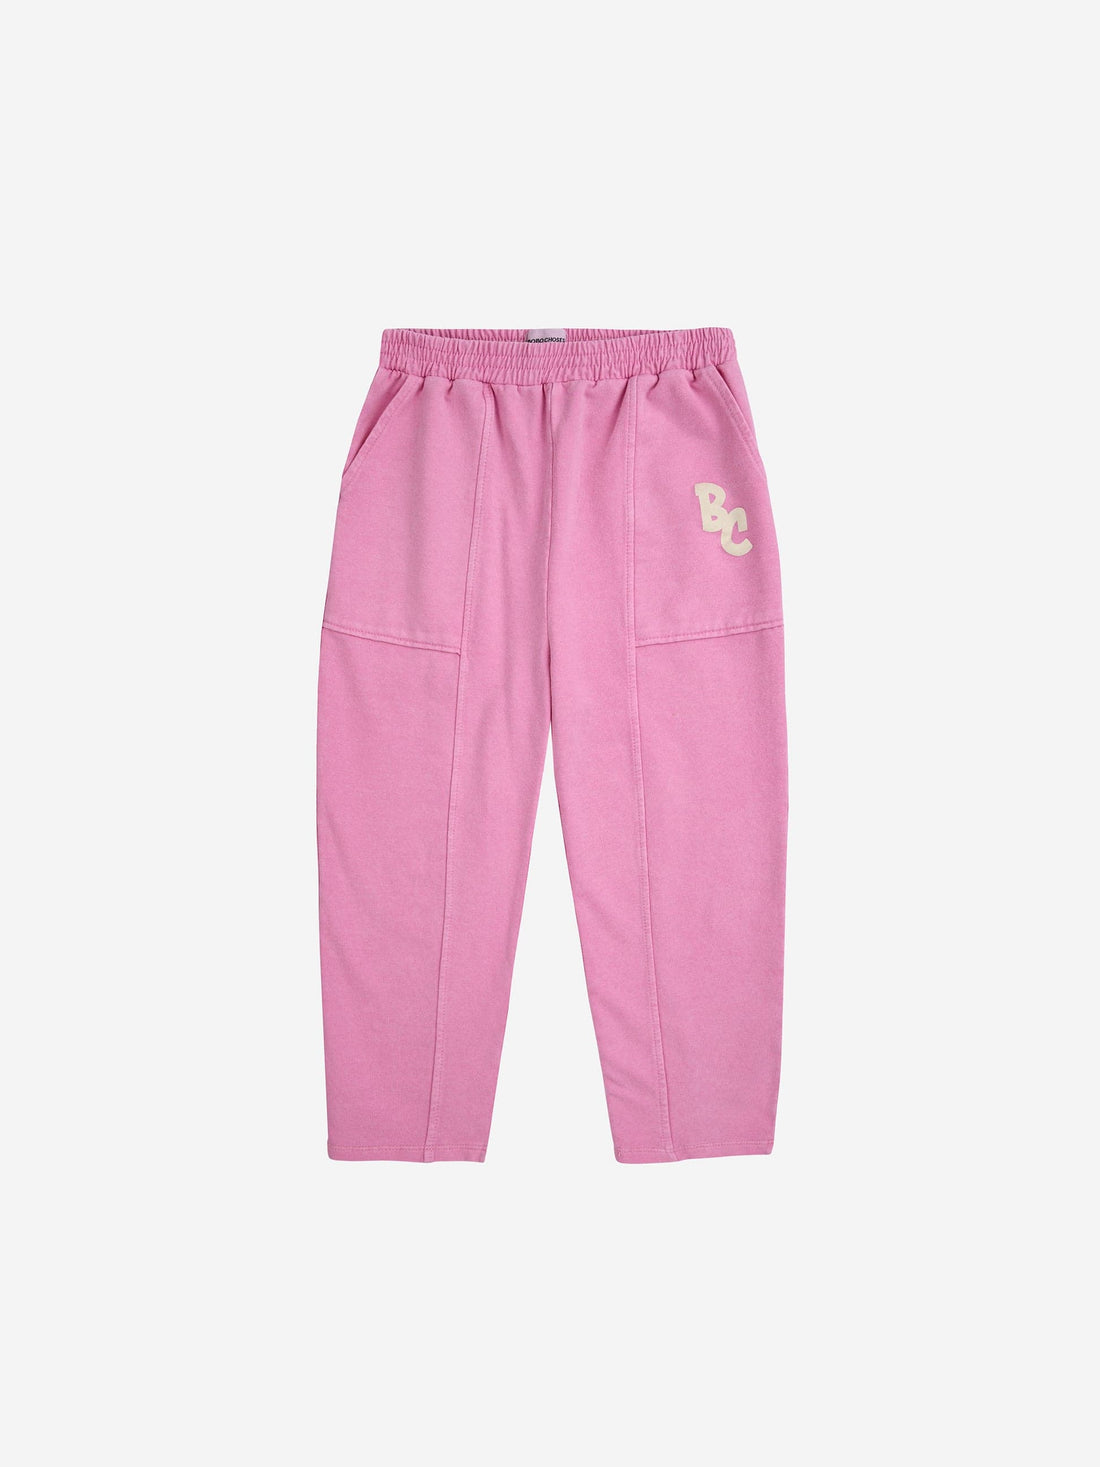 BC Pink Jogging Pants - Parkette.